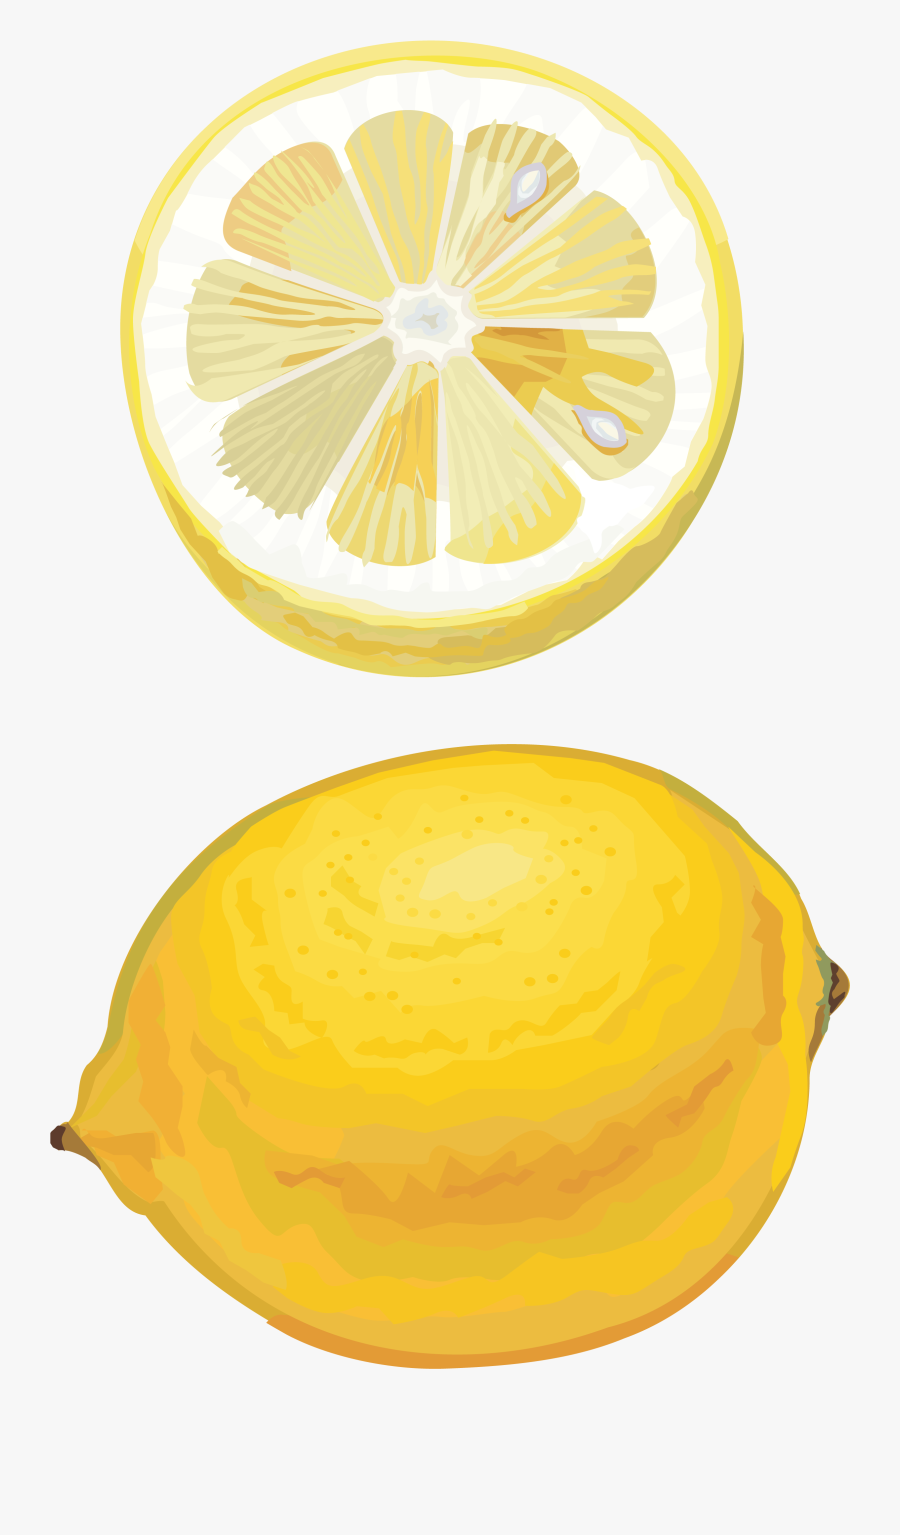 Transparent Lemon Drawing Png, Transparent Clipart